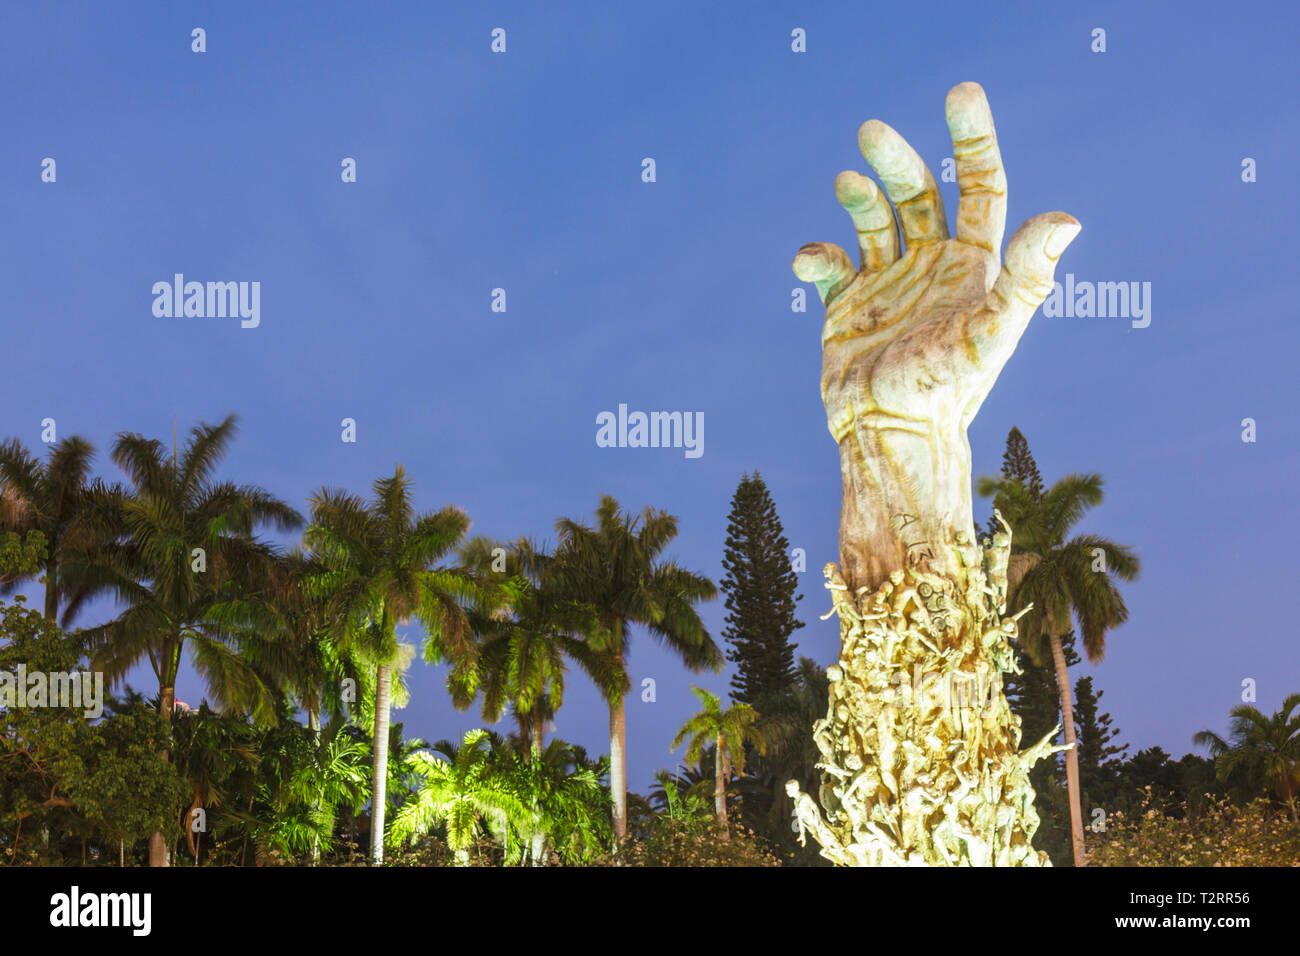 Miami Beach Florida,Holocaust Memorial,bronze,Sculpture of Love & Anguish,arm,hand,hands,Kenneth Treister,meditation garden,Jews,Jewish,genocide,FL090 Stock Photo